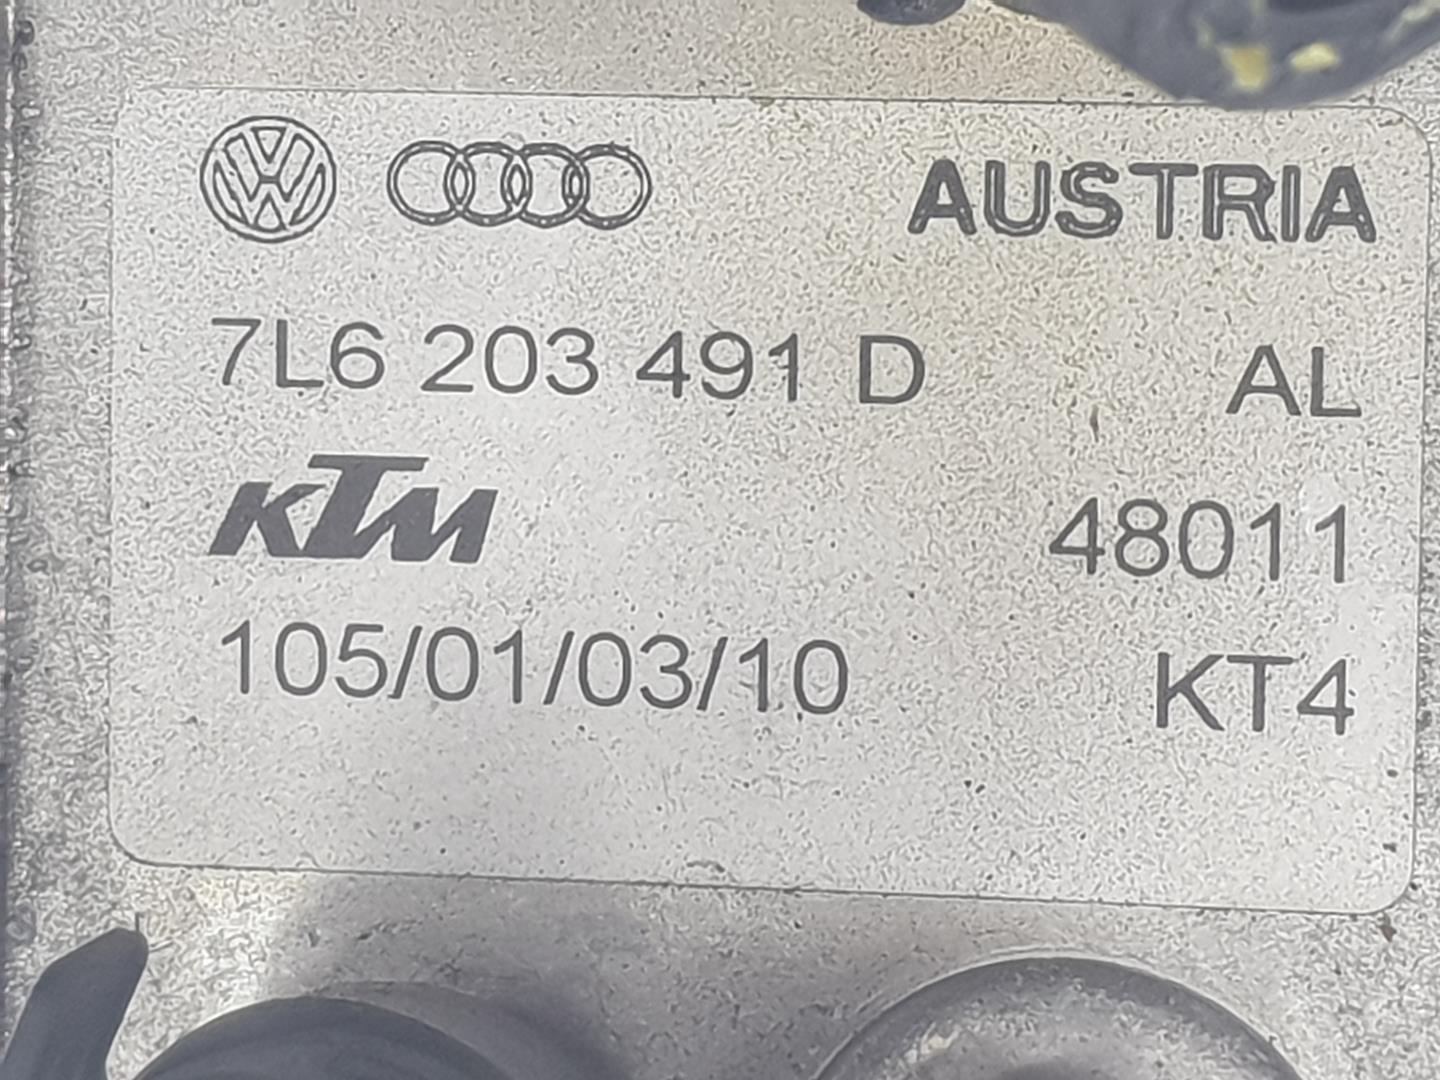 AUDI Q7 4L (2005-2015) Kitos variklio skyriaus detalės 7L6203491D, 7L6203491D 24239954